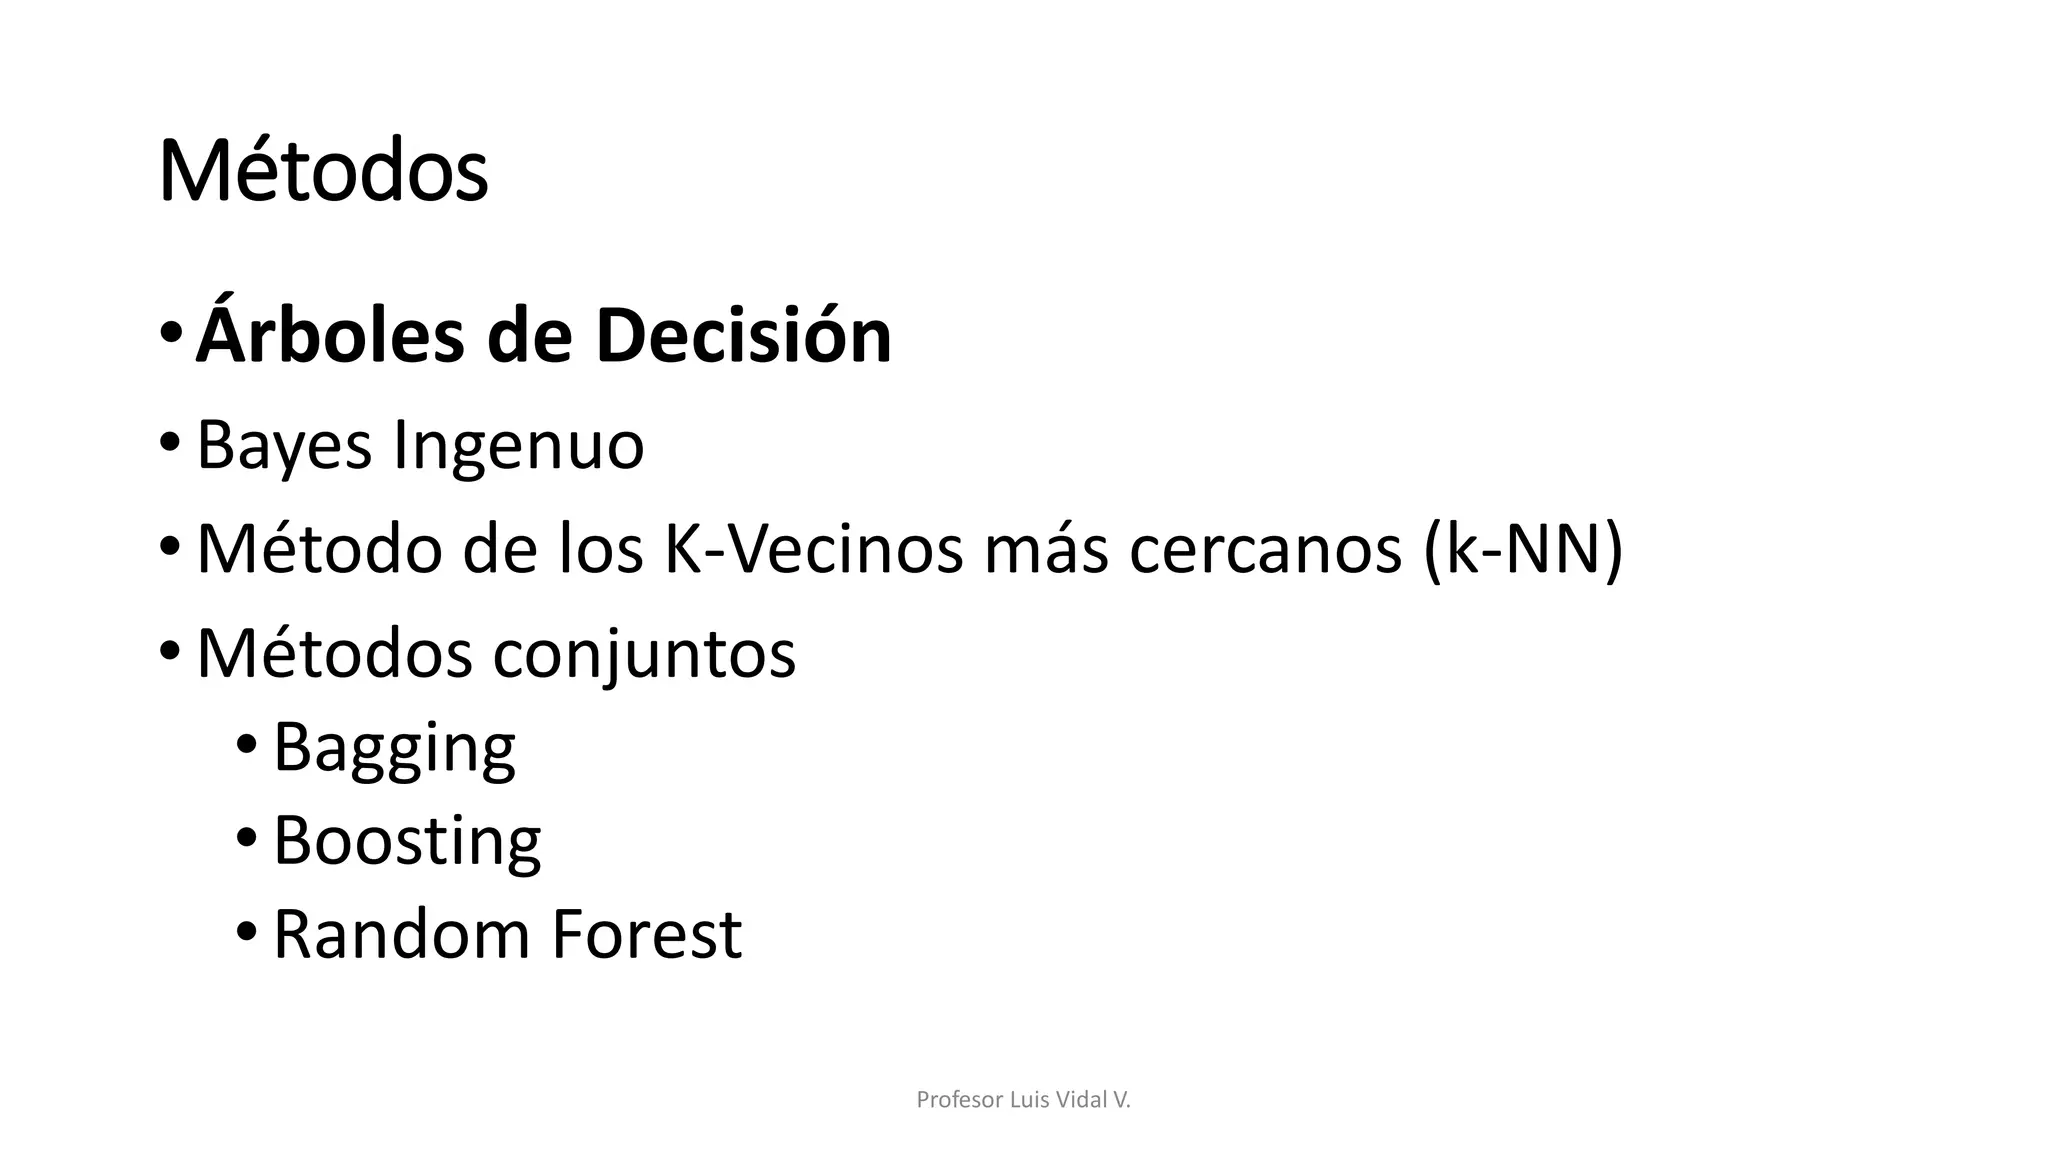 Arbol de Decisión.pdf